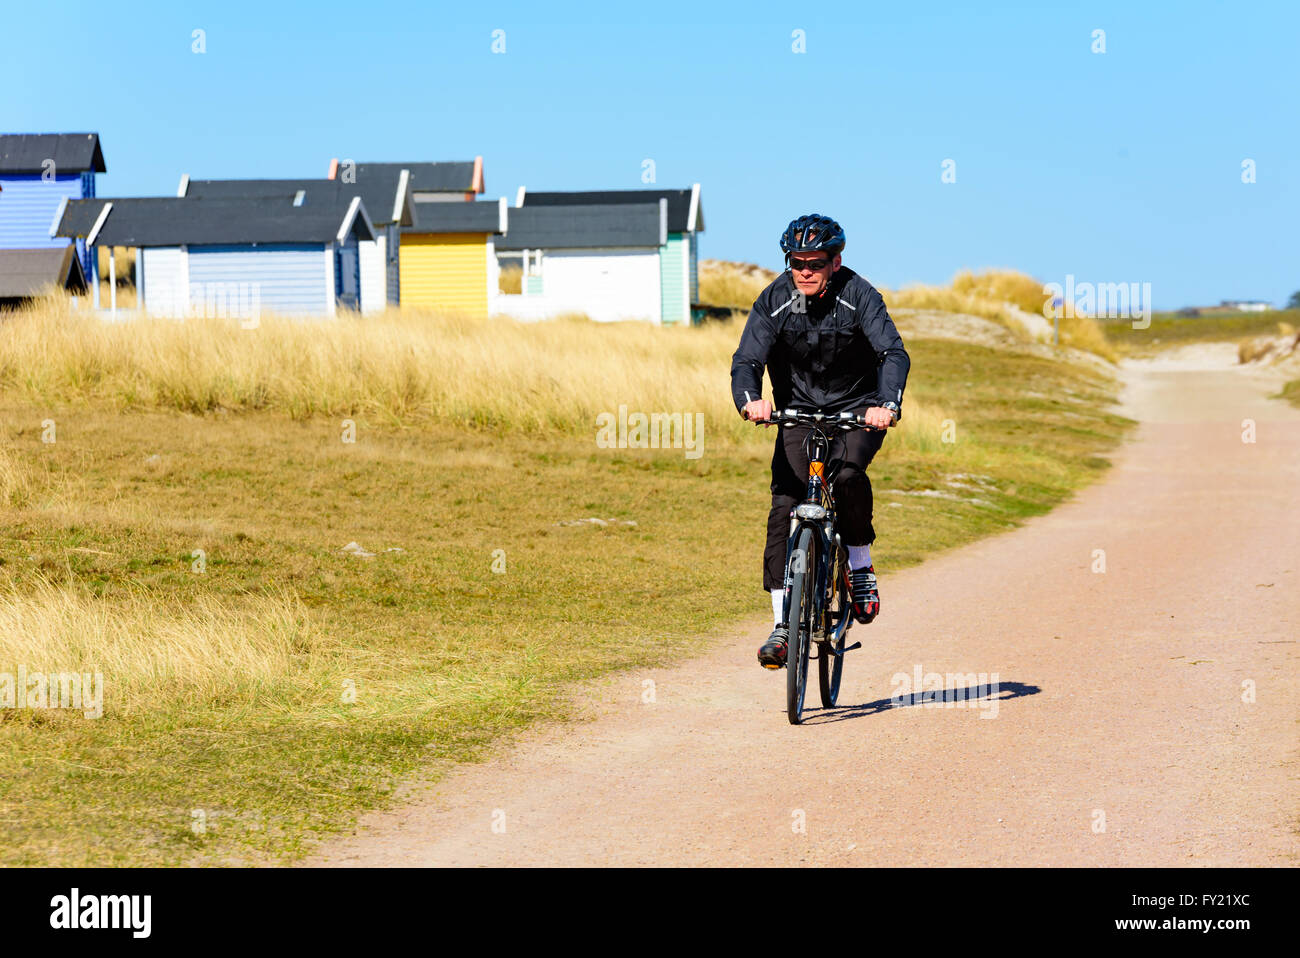 Skanor, Suecia - 11 de abril de 2016: Macho ciclista ejercicio a lo largo de una playa de arena camino o sendero, con una fila de casitas de baño ser Foto de stock